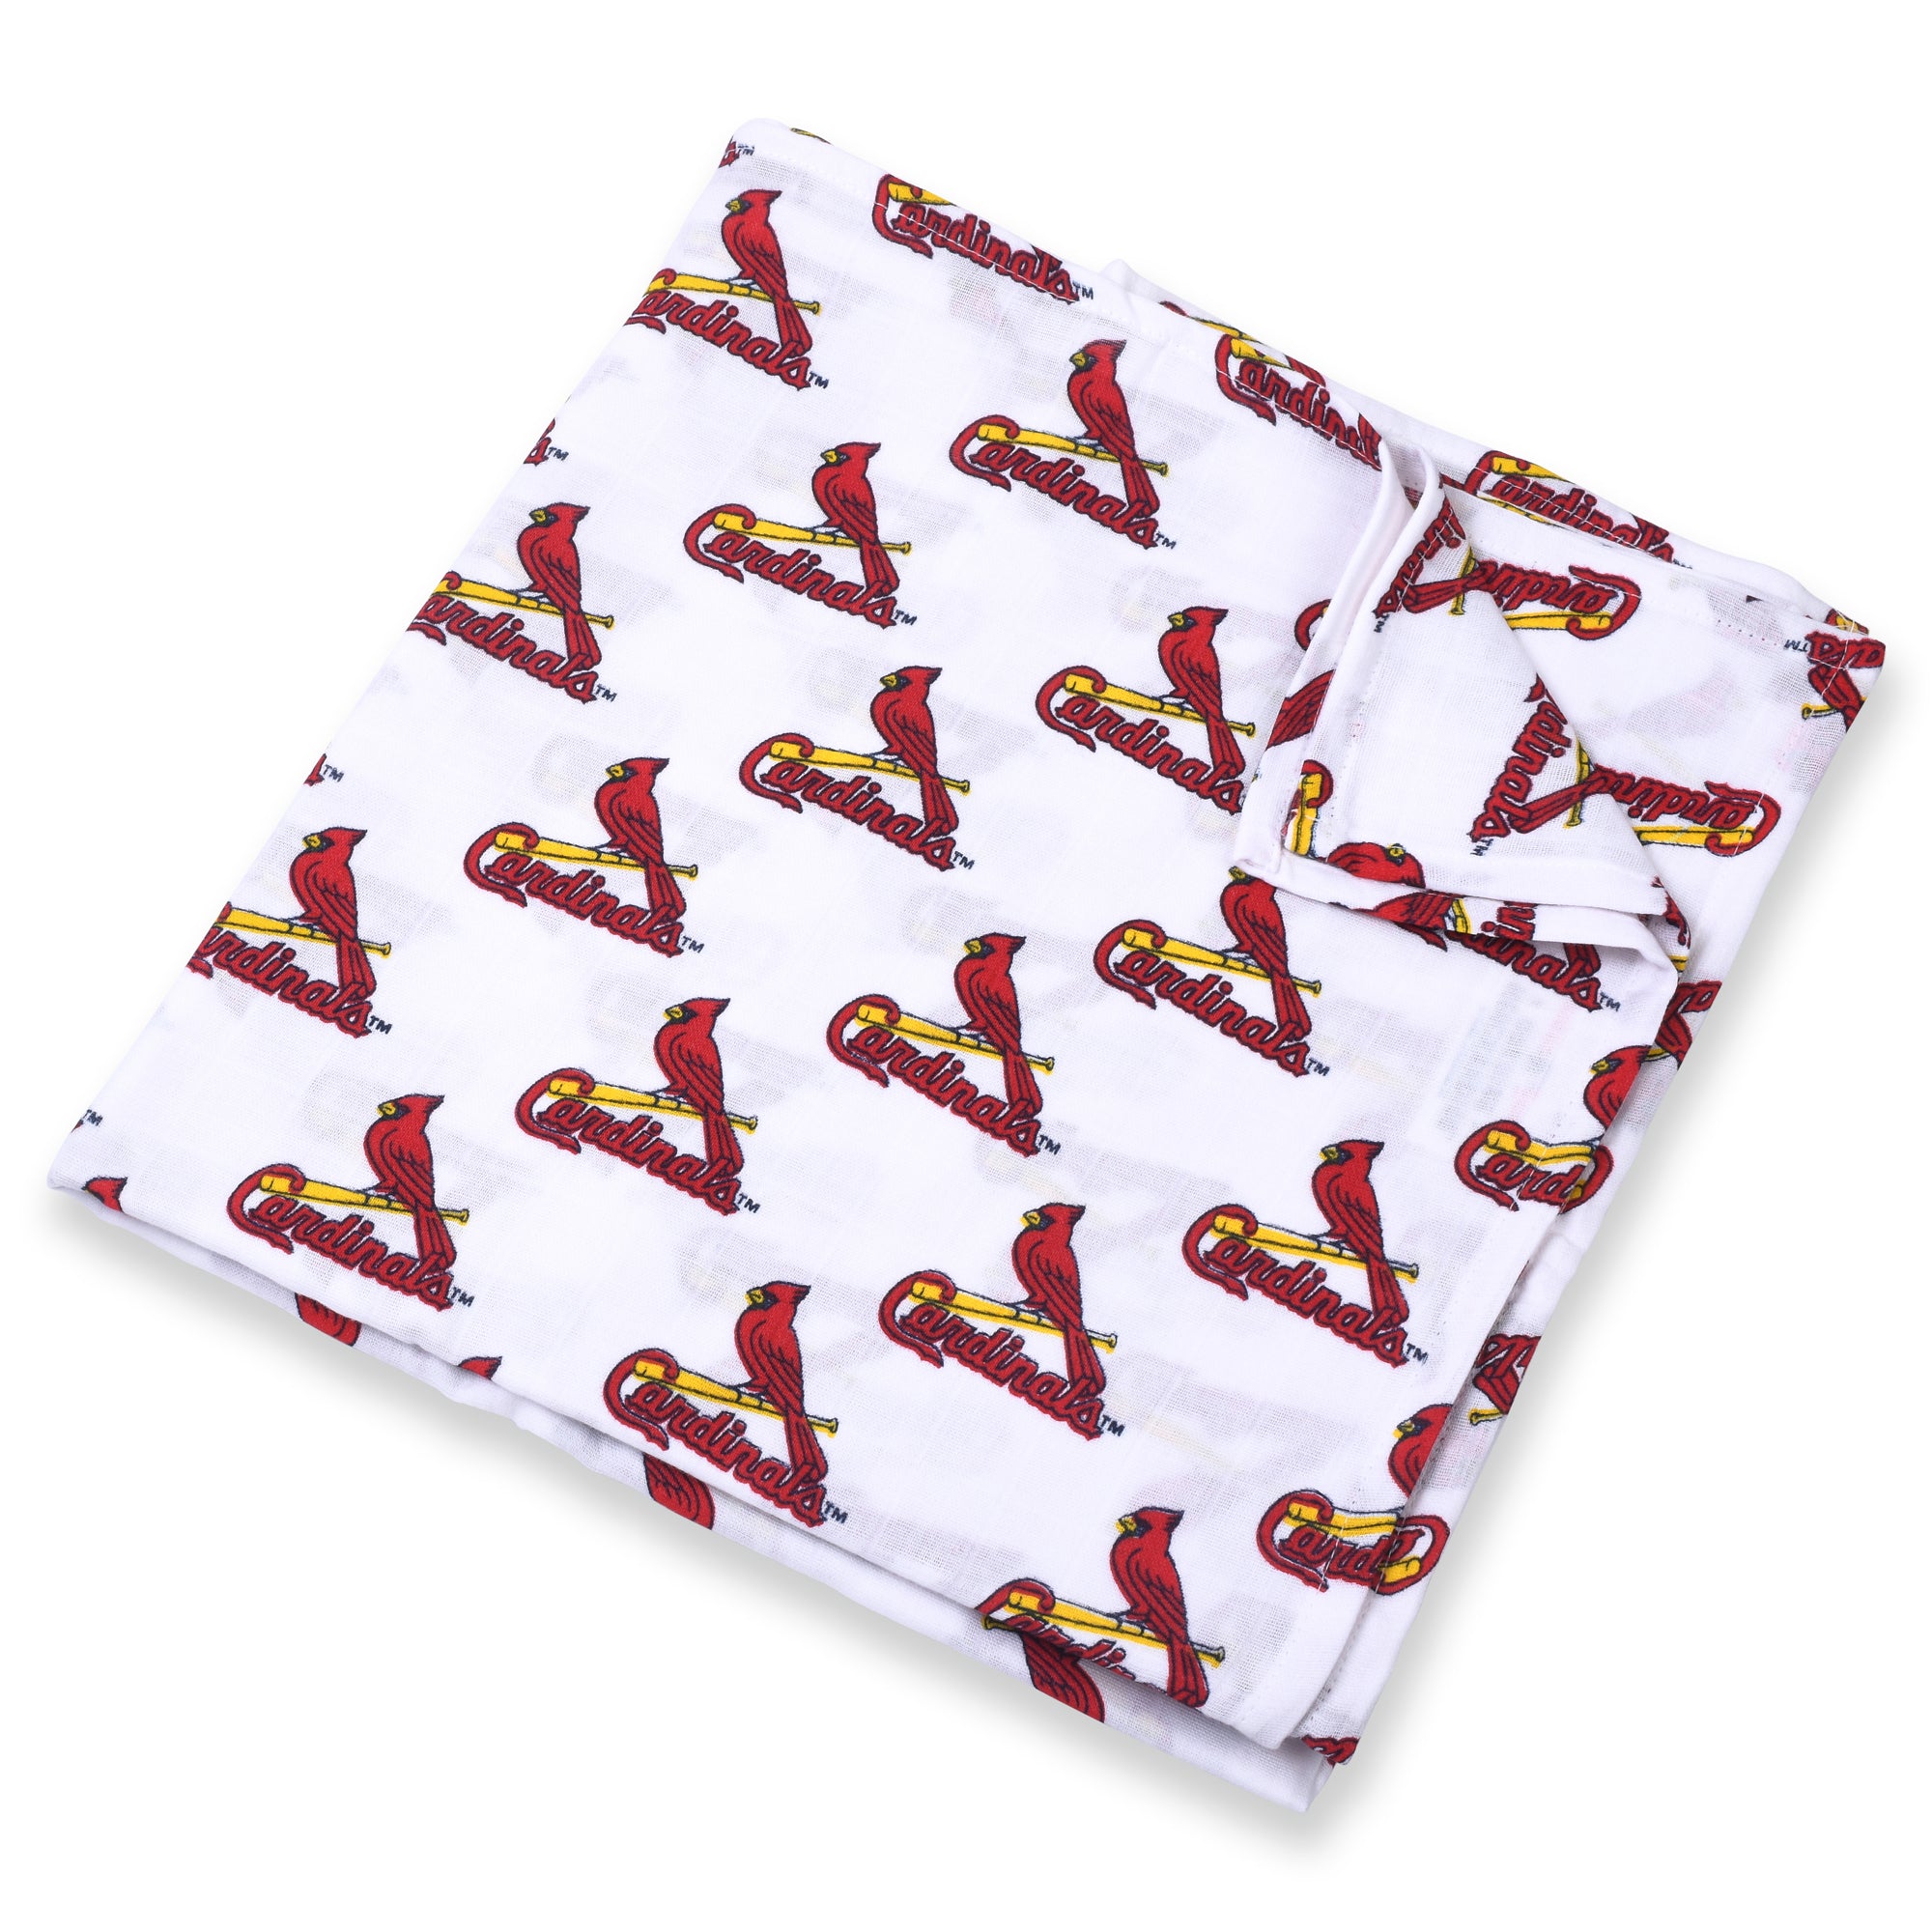 Wholesale St Louis Cardinals Products - Cardinals Merchandise